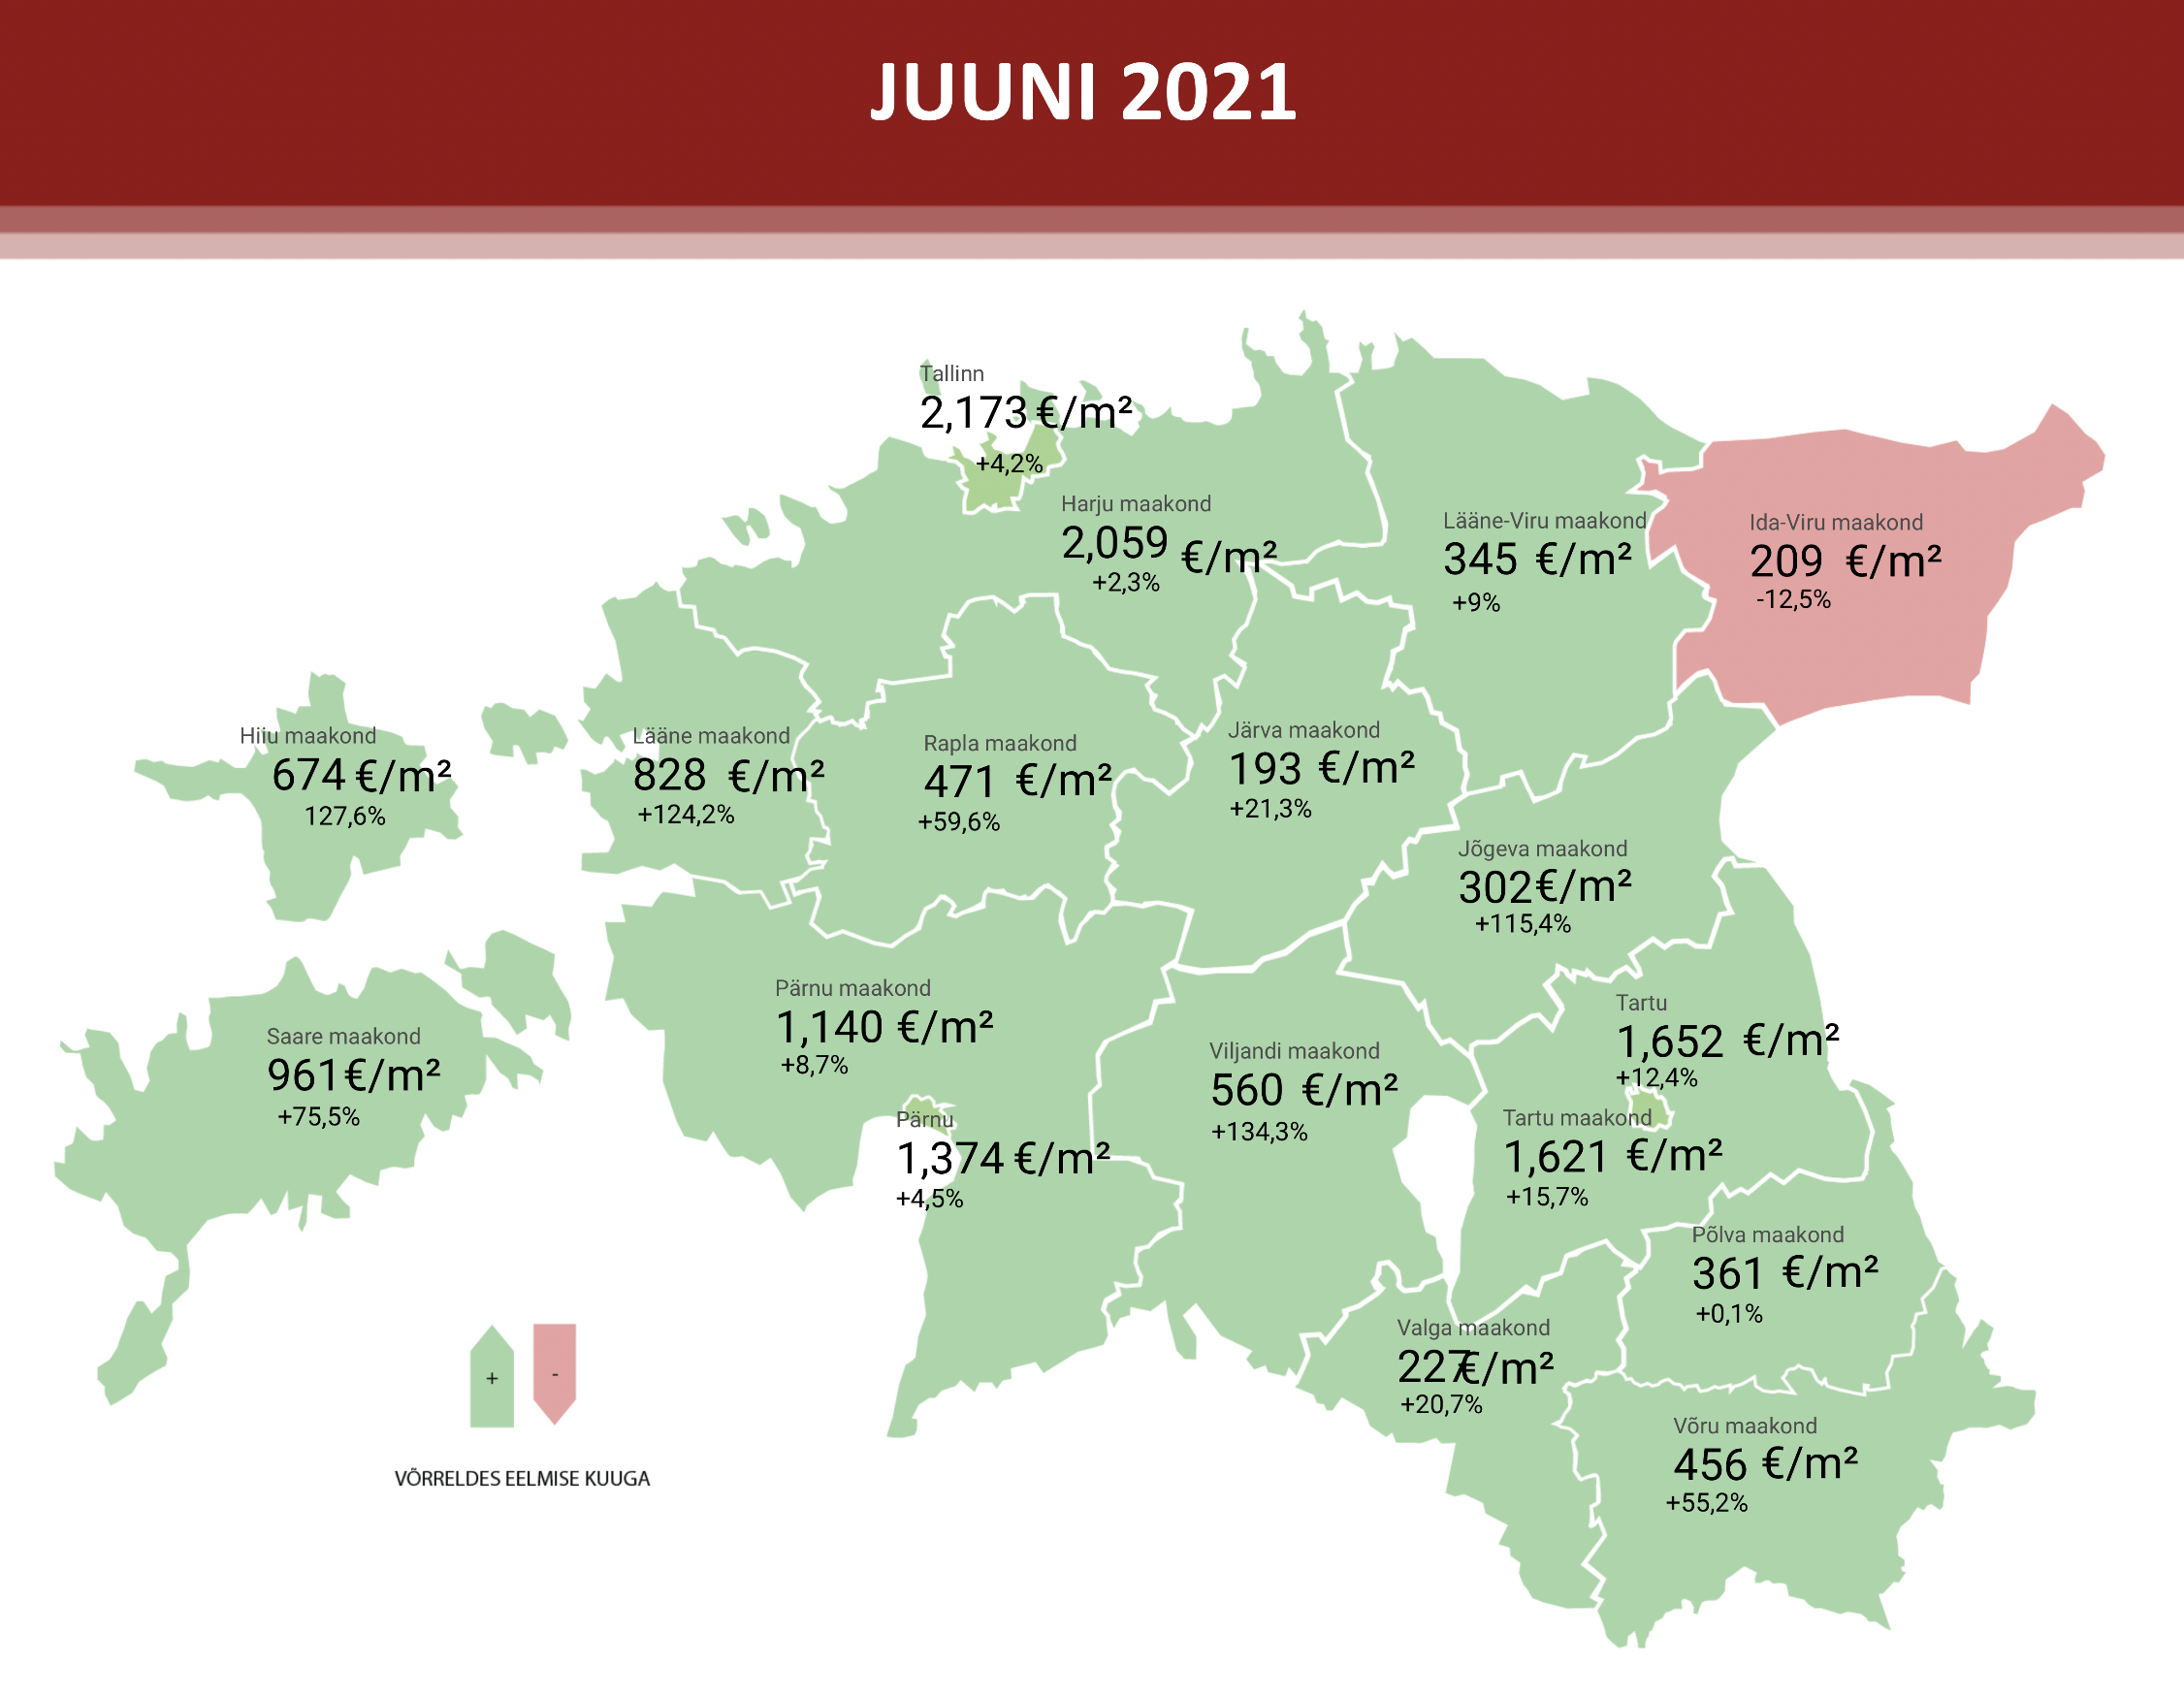 Lühiülevaade Eesti kinnisvaraturust: juuni 2021